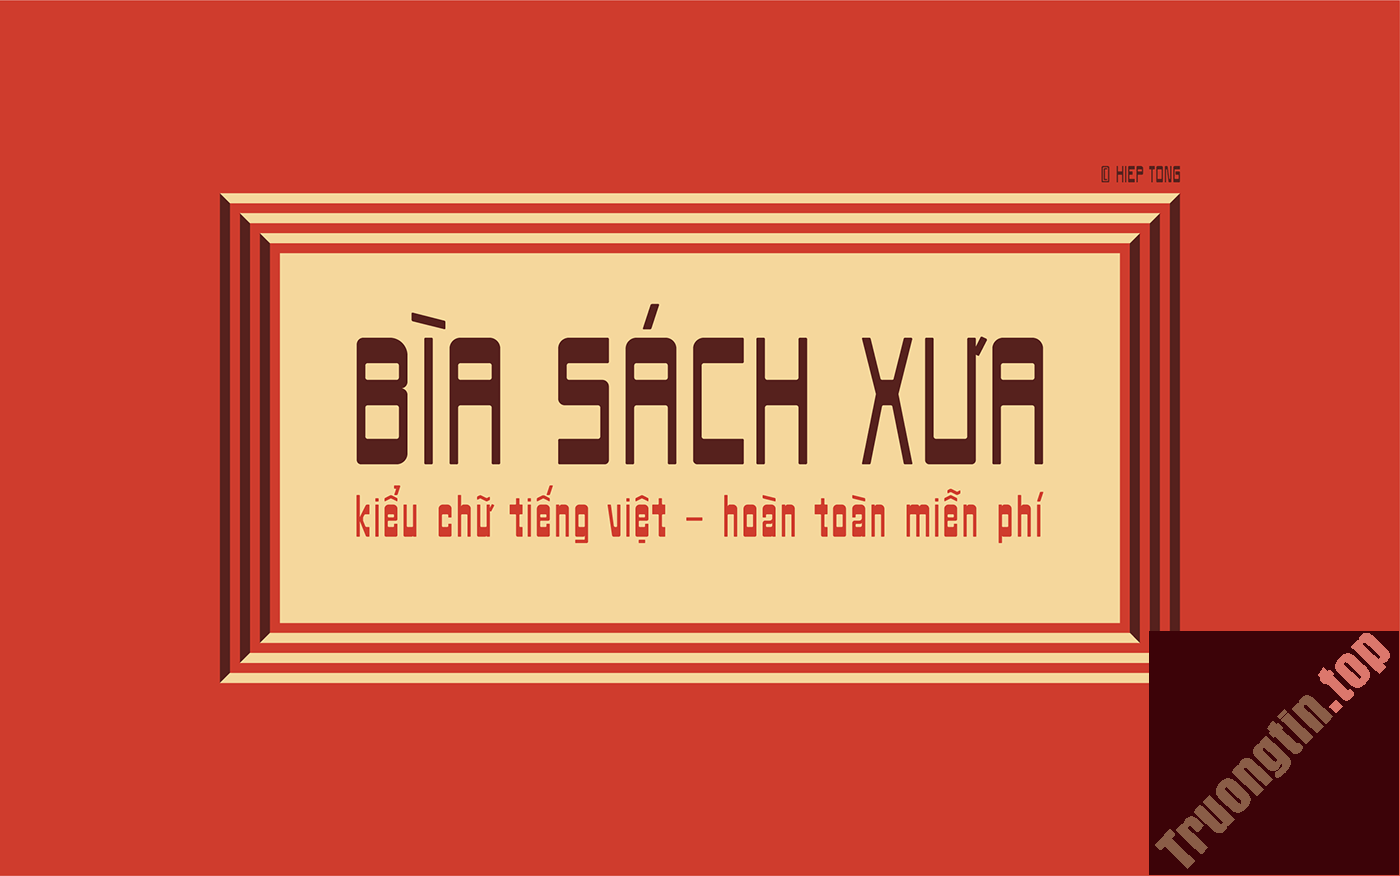 Mời tải font chữ Bìa sách xưa, mang phong cách hoài cổ độc đáo, có hỗ trợ tiếng Việt